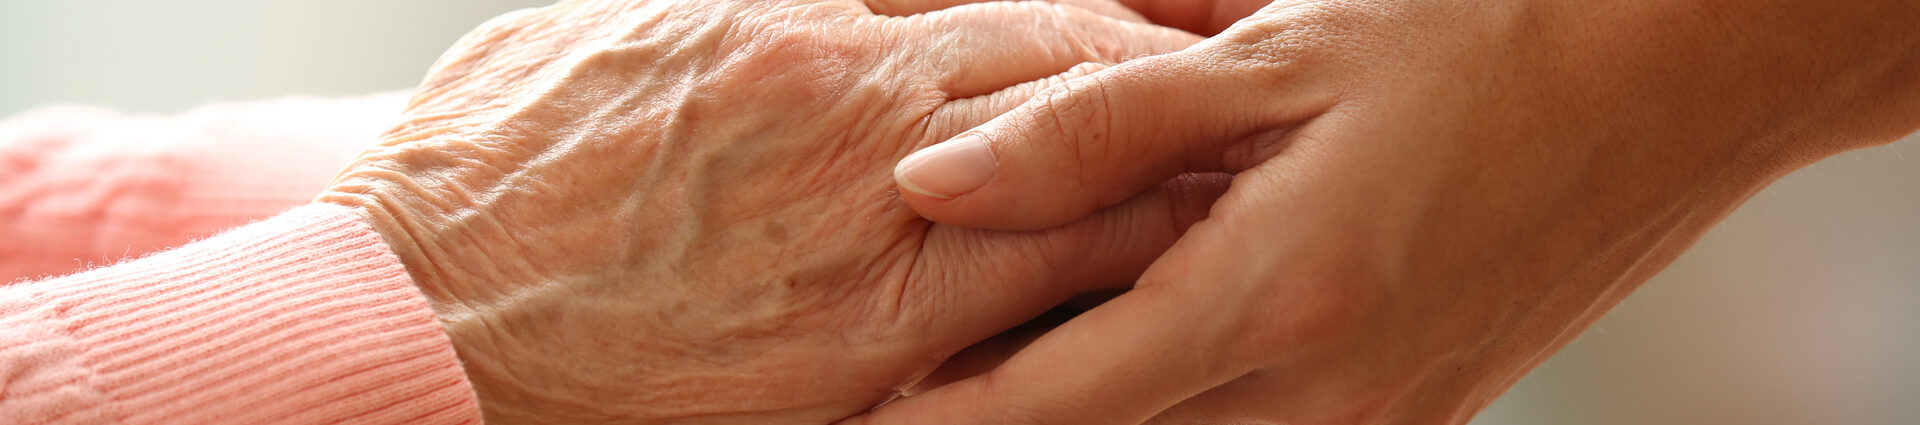 Eine junge Person reicht einer Seniorin beide Hände